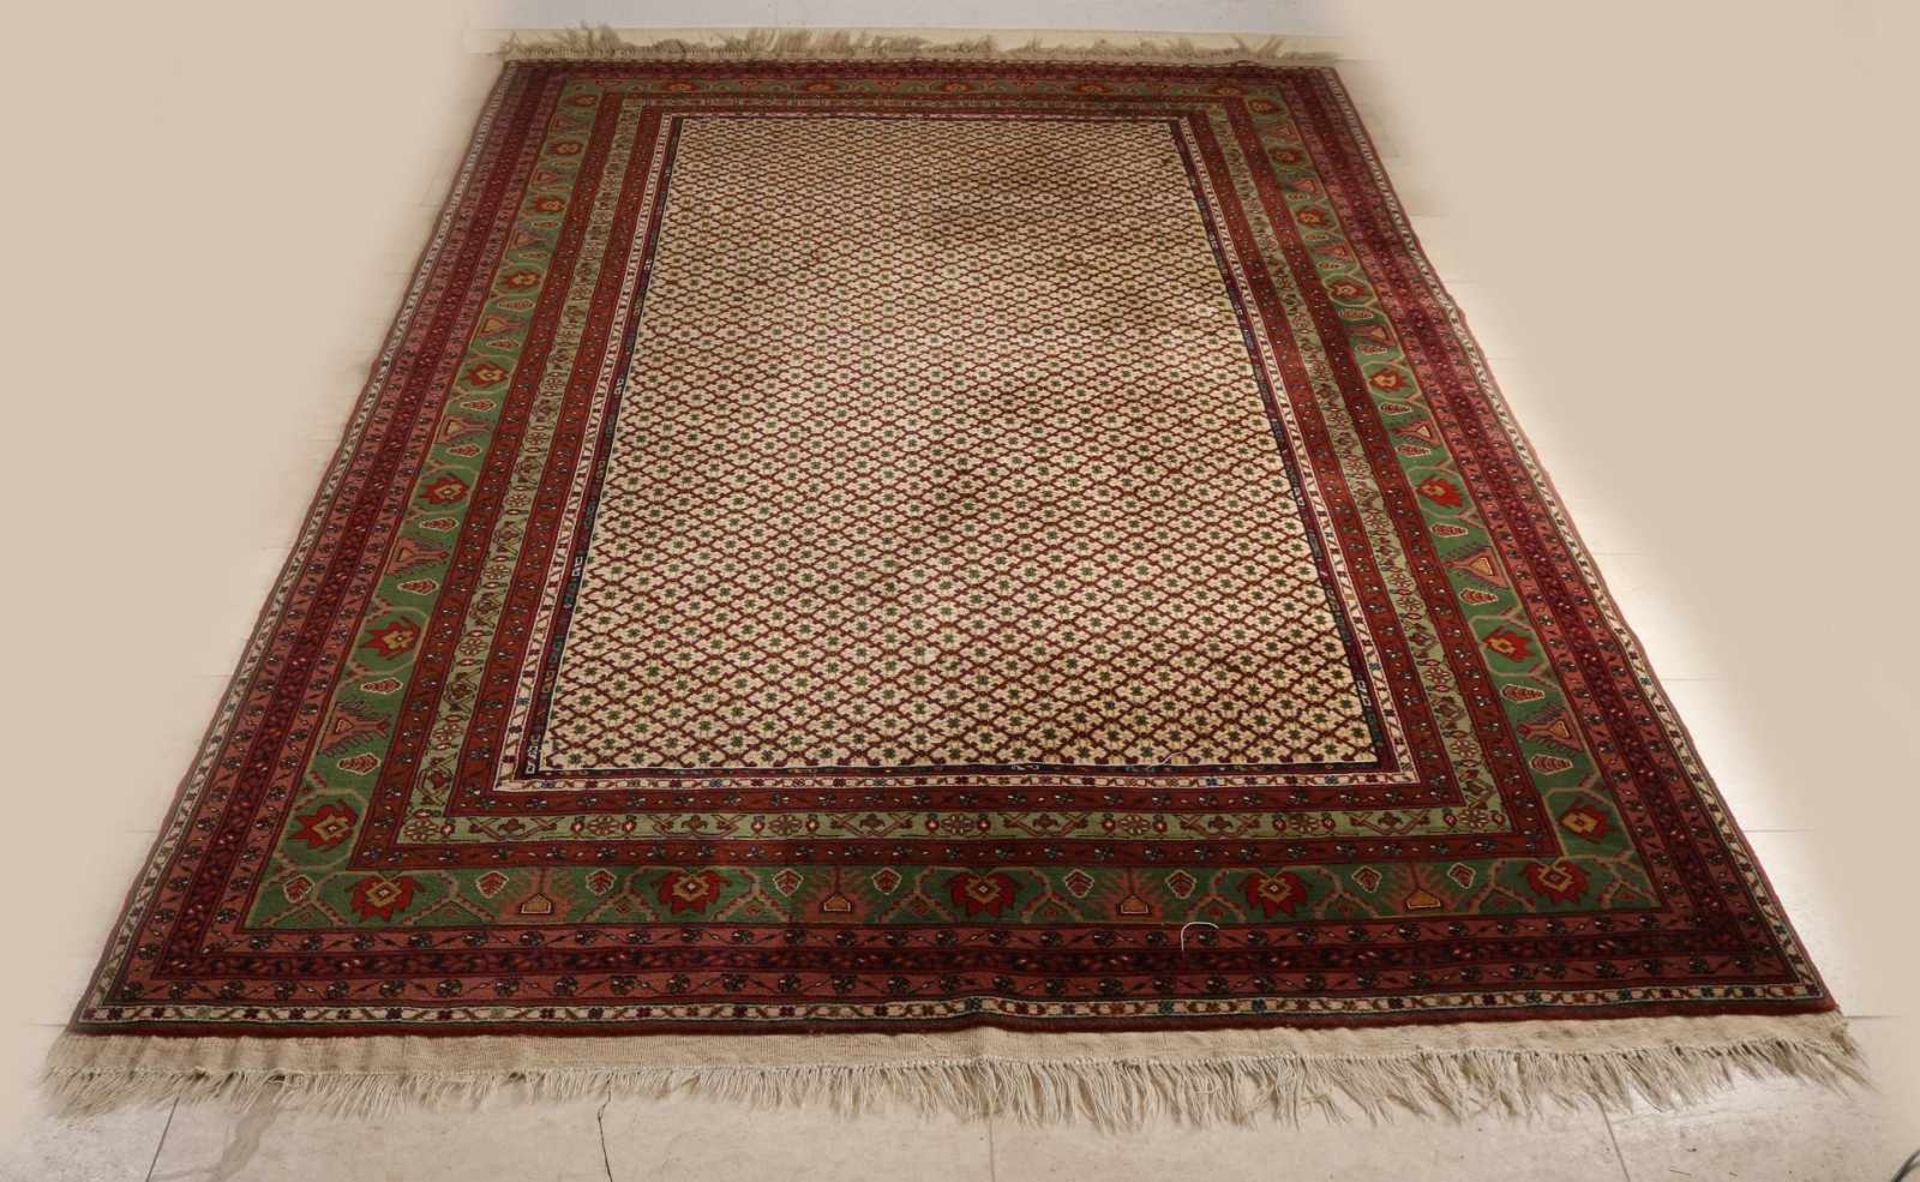 Großer alter persischer Kundus Teppich mit Blumendekor. Natürliche Erdtöne. Größe: 305 x 195